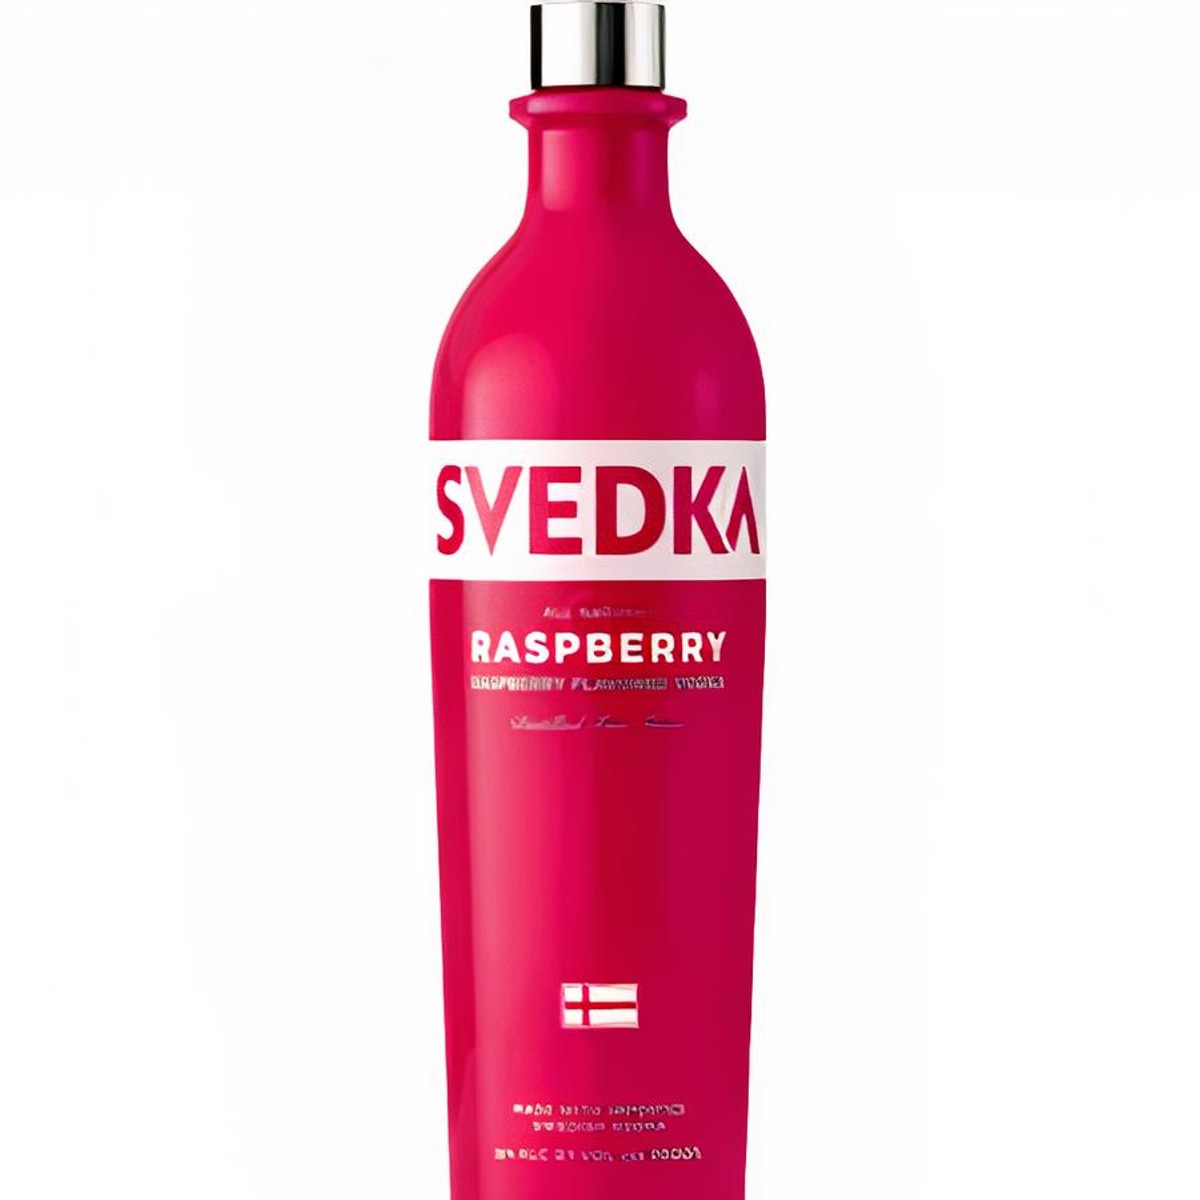 Belvedere Vodka very large LED bottle light, 6 litre - Retro Style Media